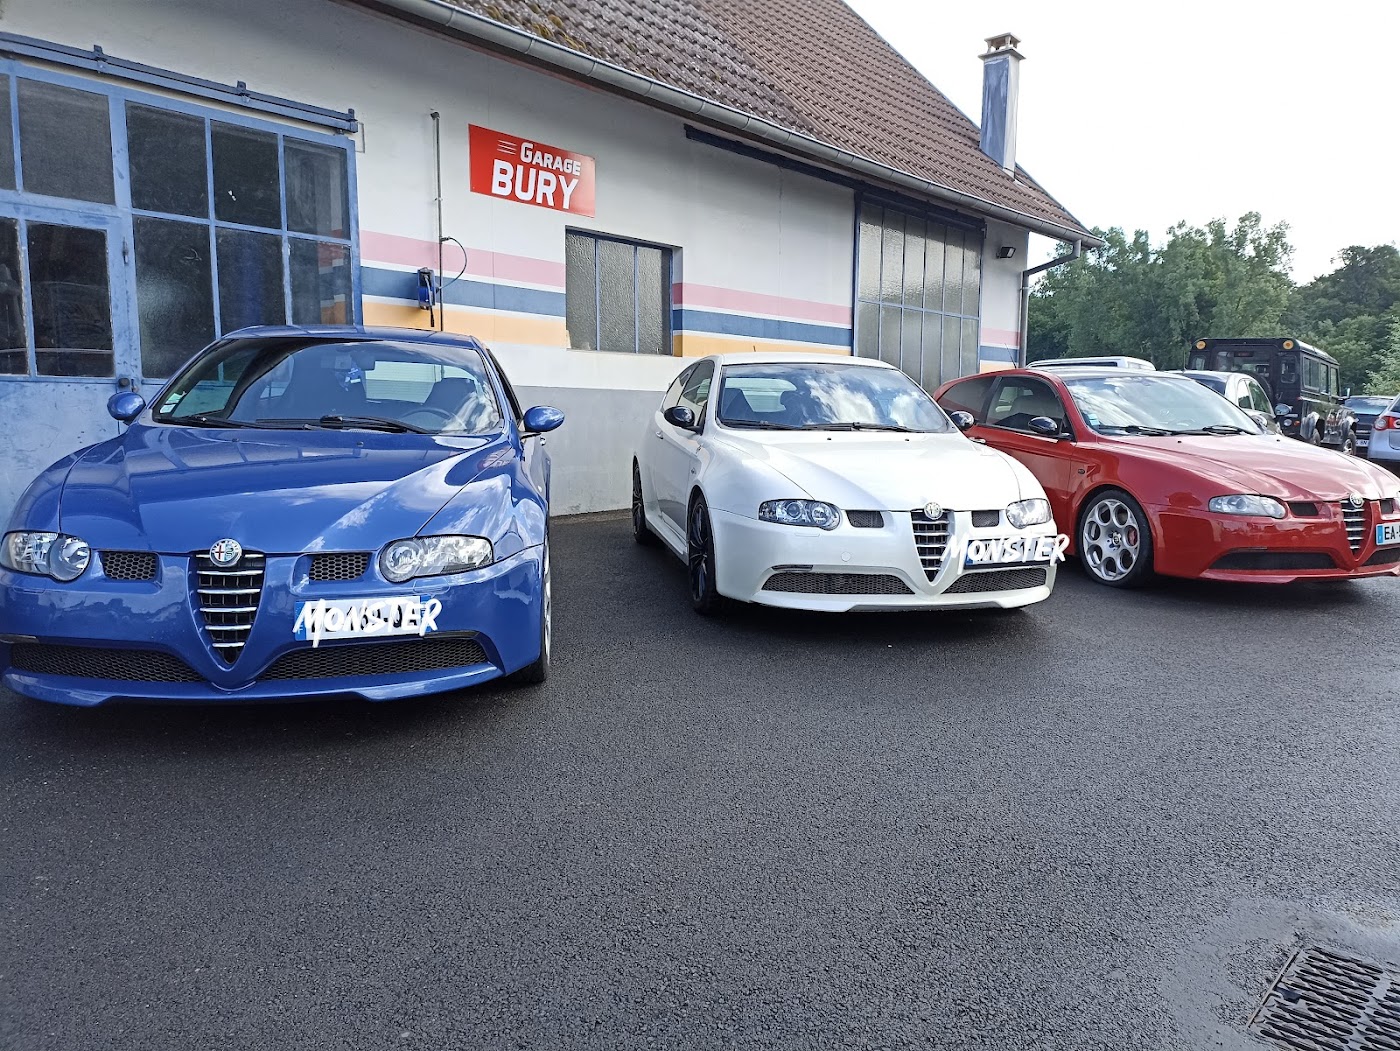 Garage Bury entretien et réparation toutes marques Spécialiste Alfa Roméo et Fiat